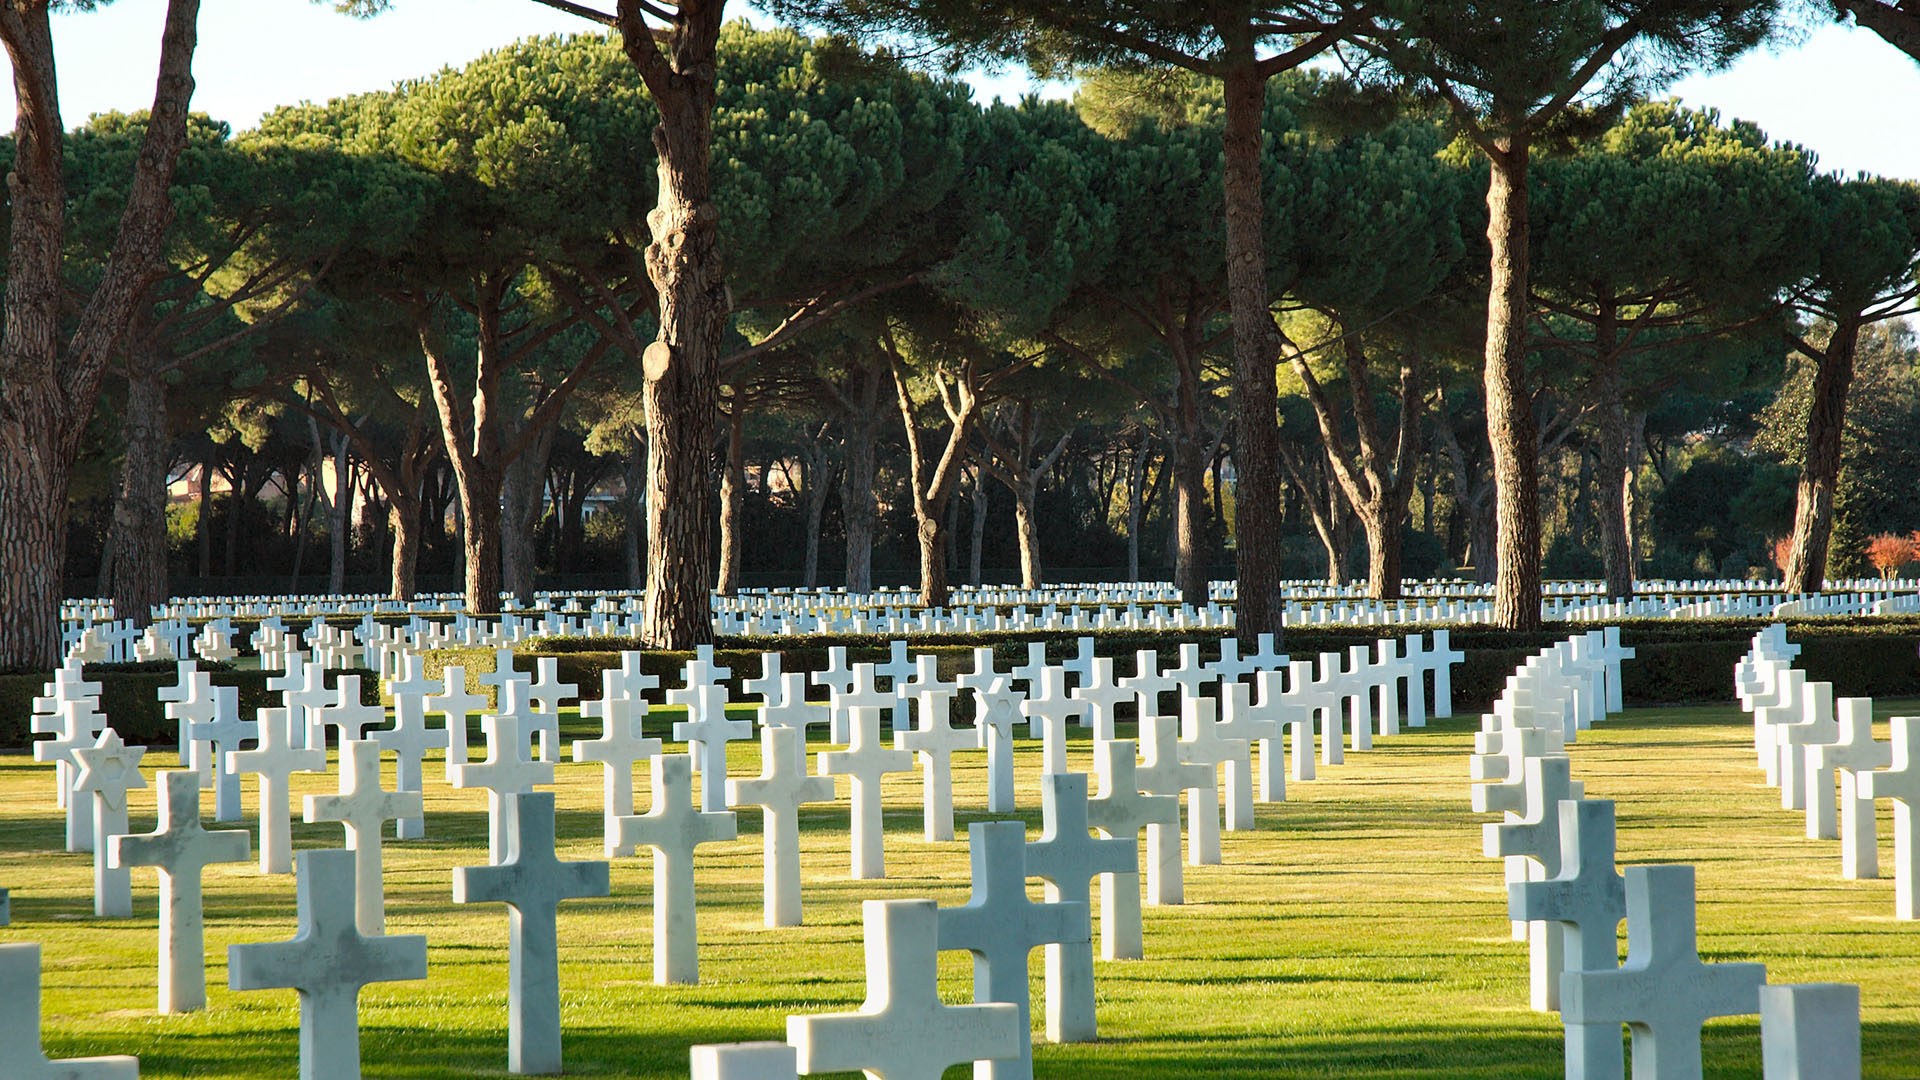 Le cimetière américain de Nettuno, au sud de Rome, est déclaré 'mémorial permanent' à la fin de la Seconde Guerre mondiale. (Photo: Wikimedia Commons/Stephen Sommerhalter/CC BY 3.0)